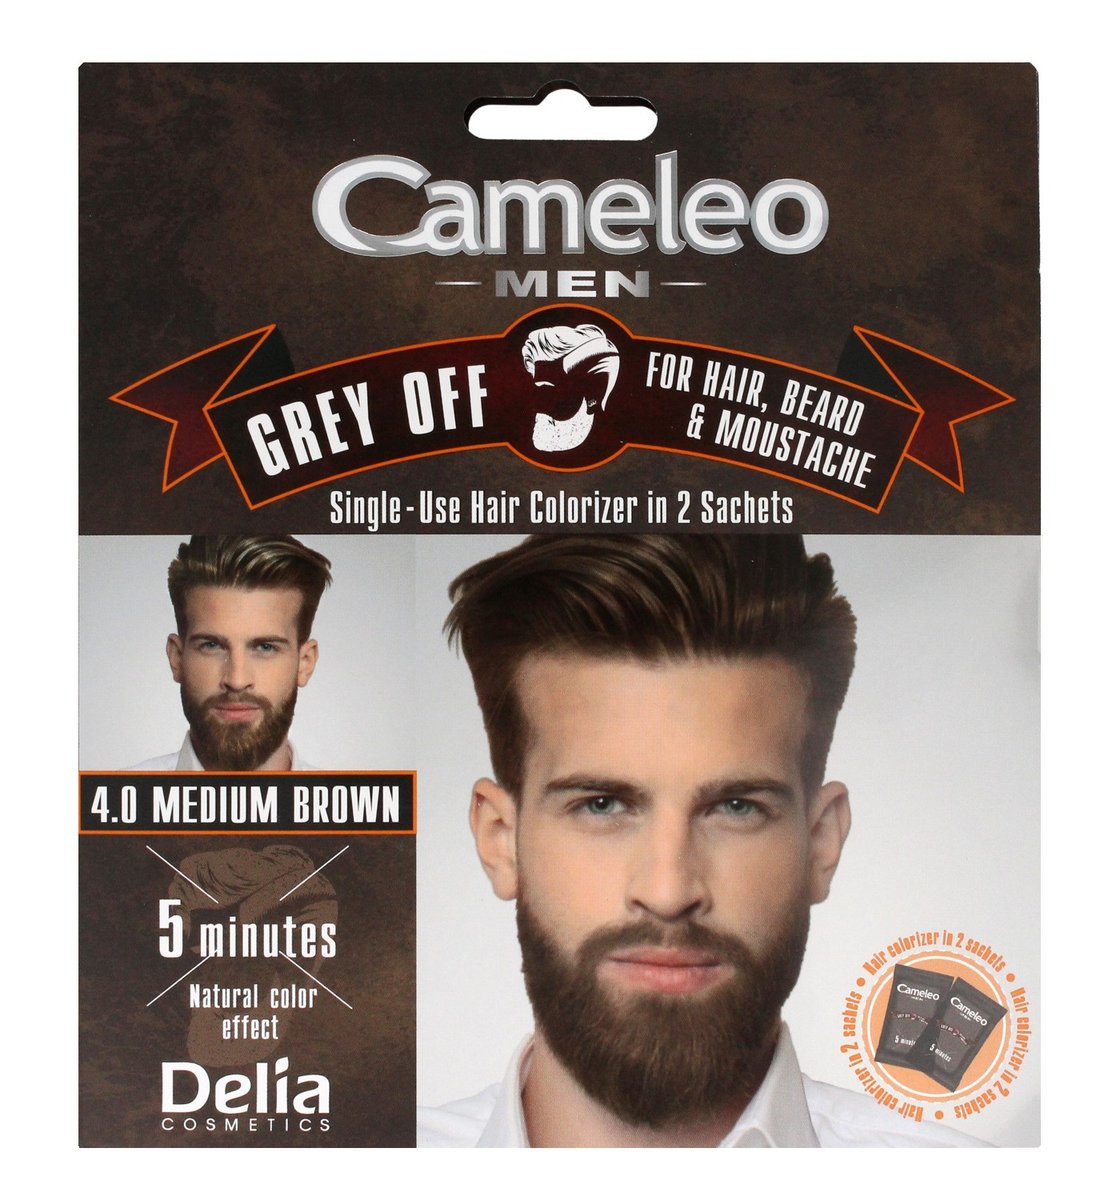 DELIA Cosmetics Cameleo Men Grey Off Farba do włosów, brody i wąsów 4.0 Medium Brown